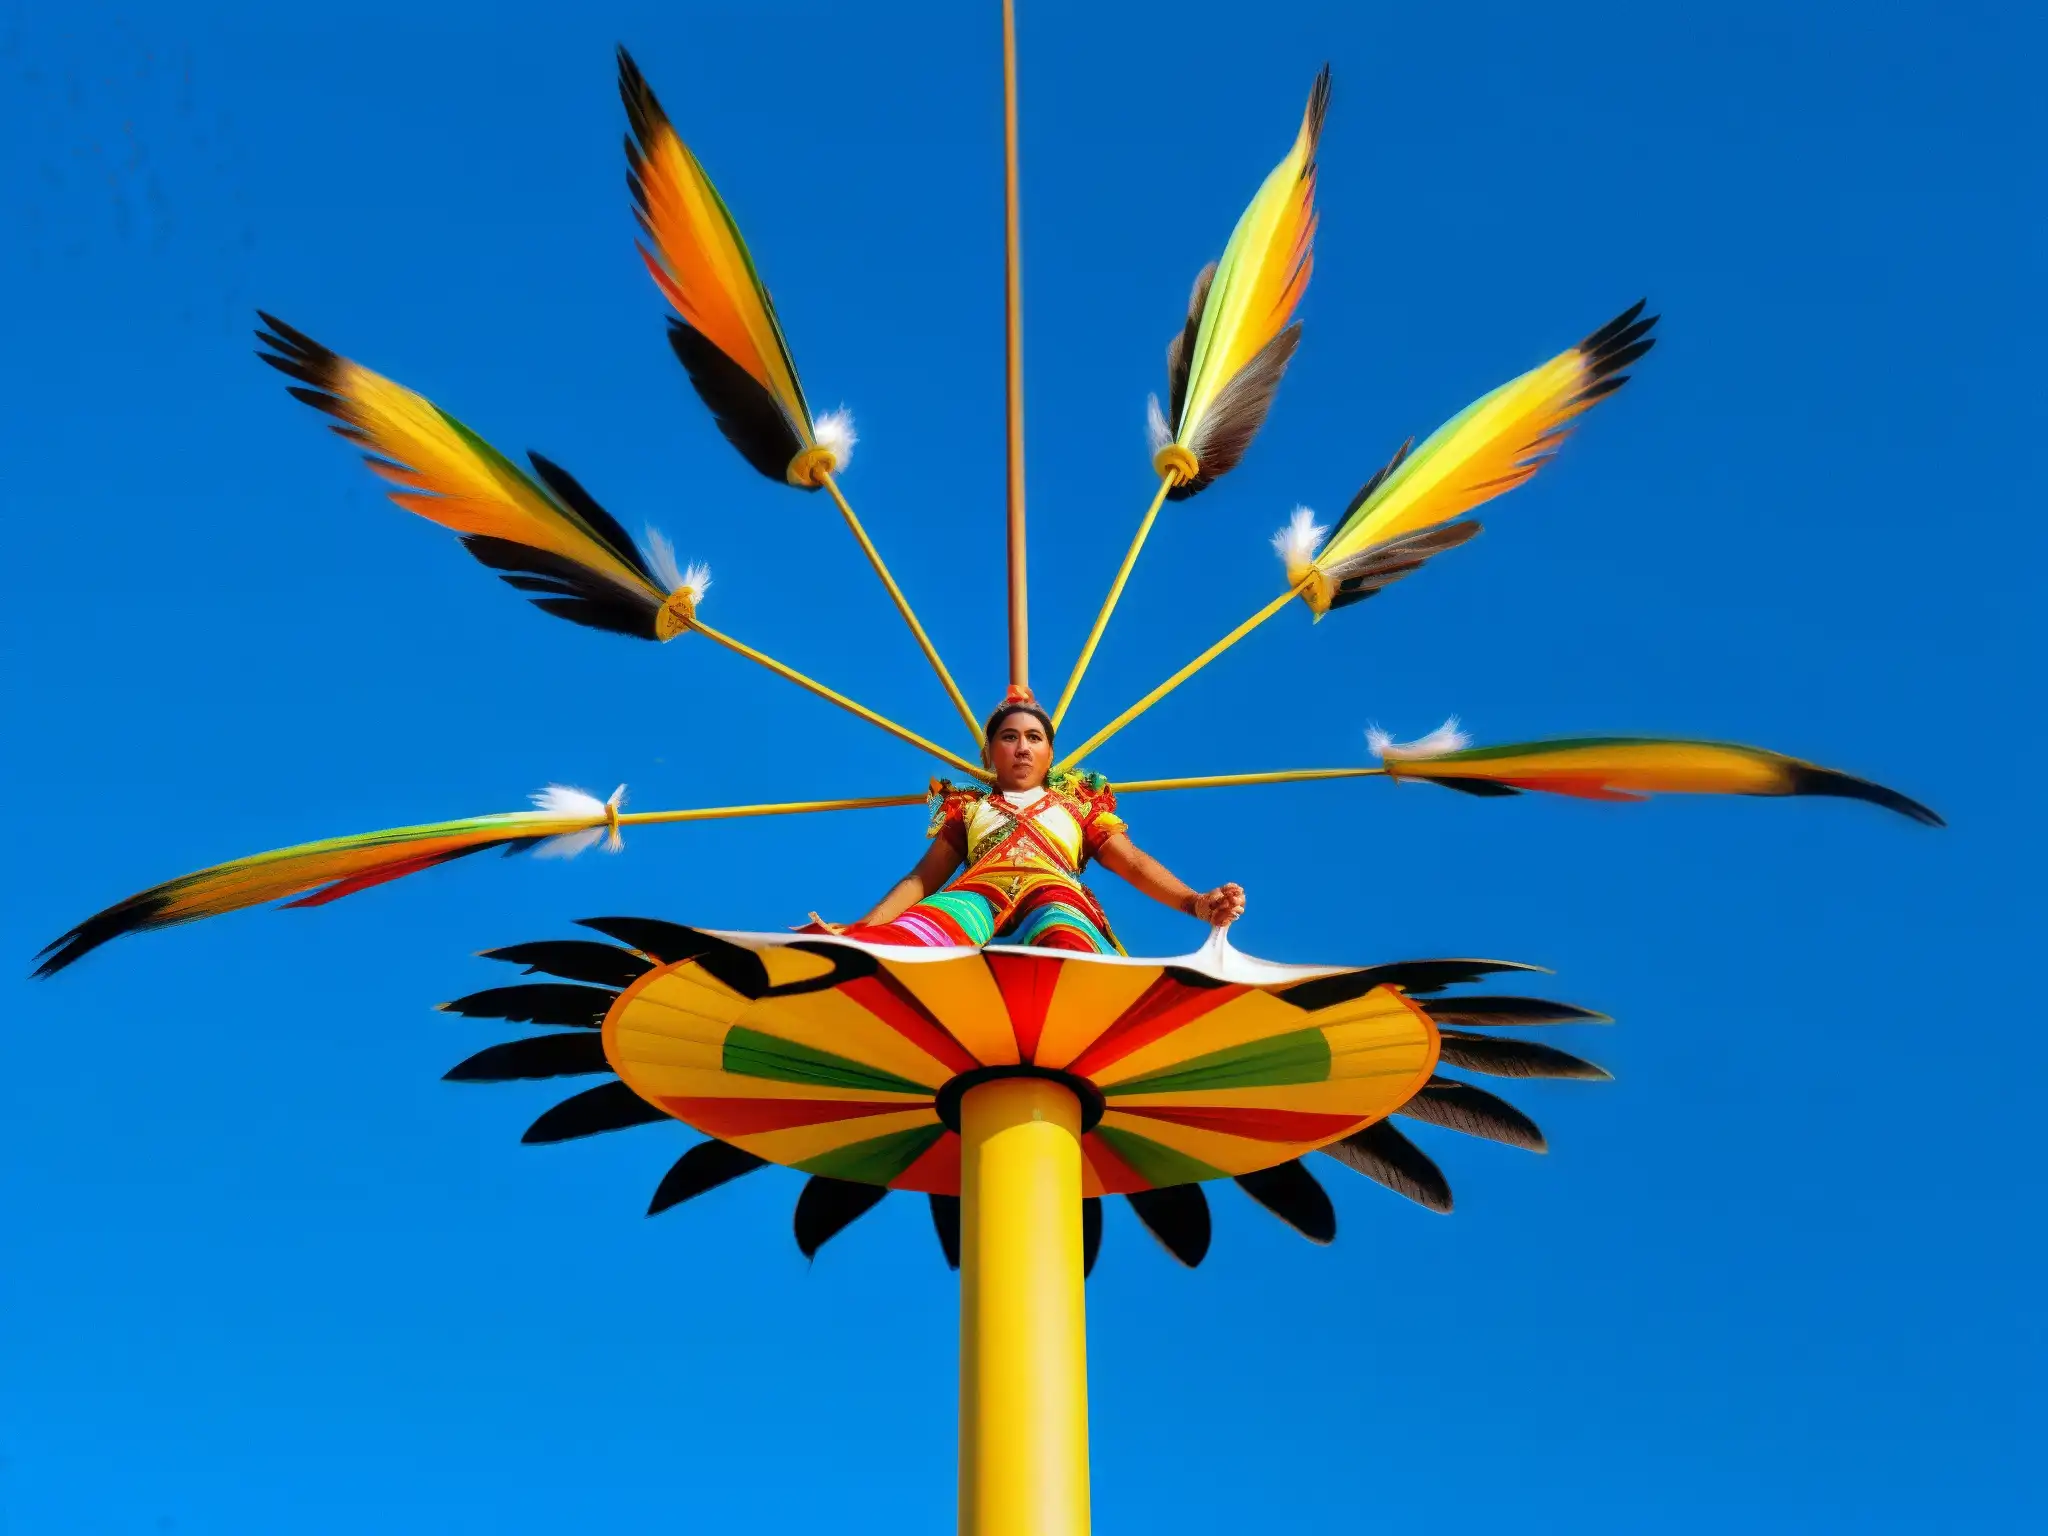 Los voladores de Papantla descienden en su ritual místico con gracia y colorido, destacándose contra el cielo azul